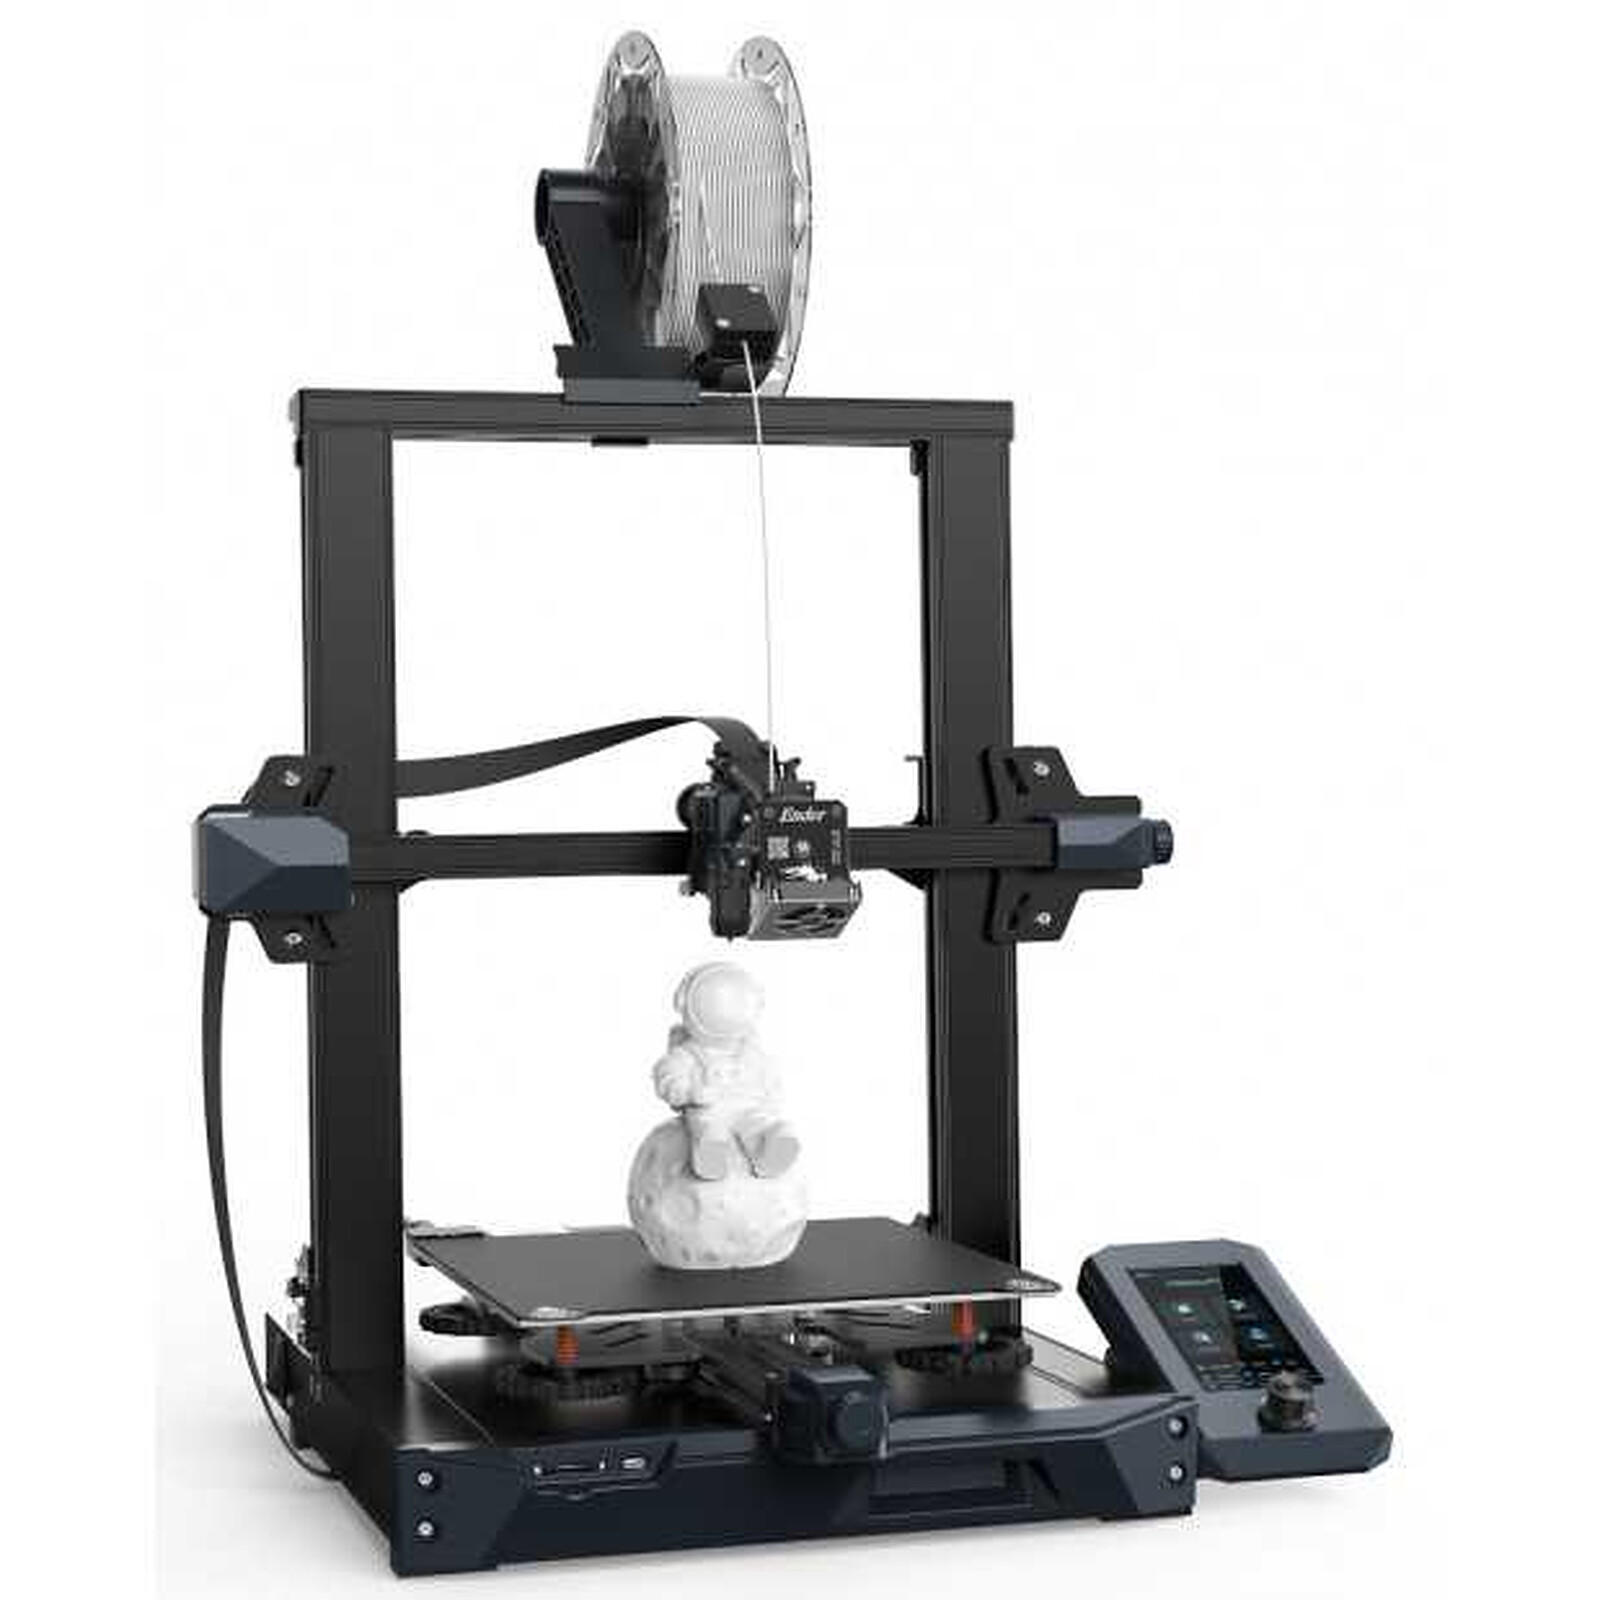 Creality Ender 3 pro - Imprimante 3D - Garantie 3 ans LDLC